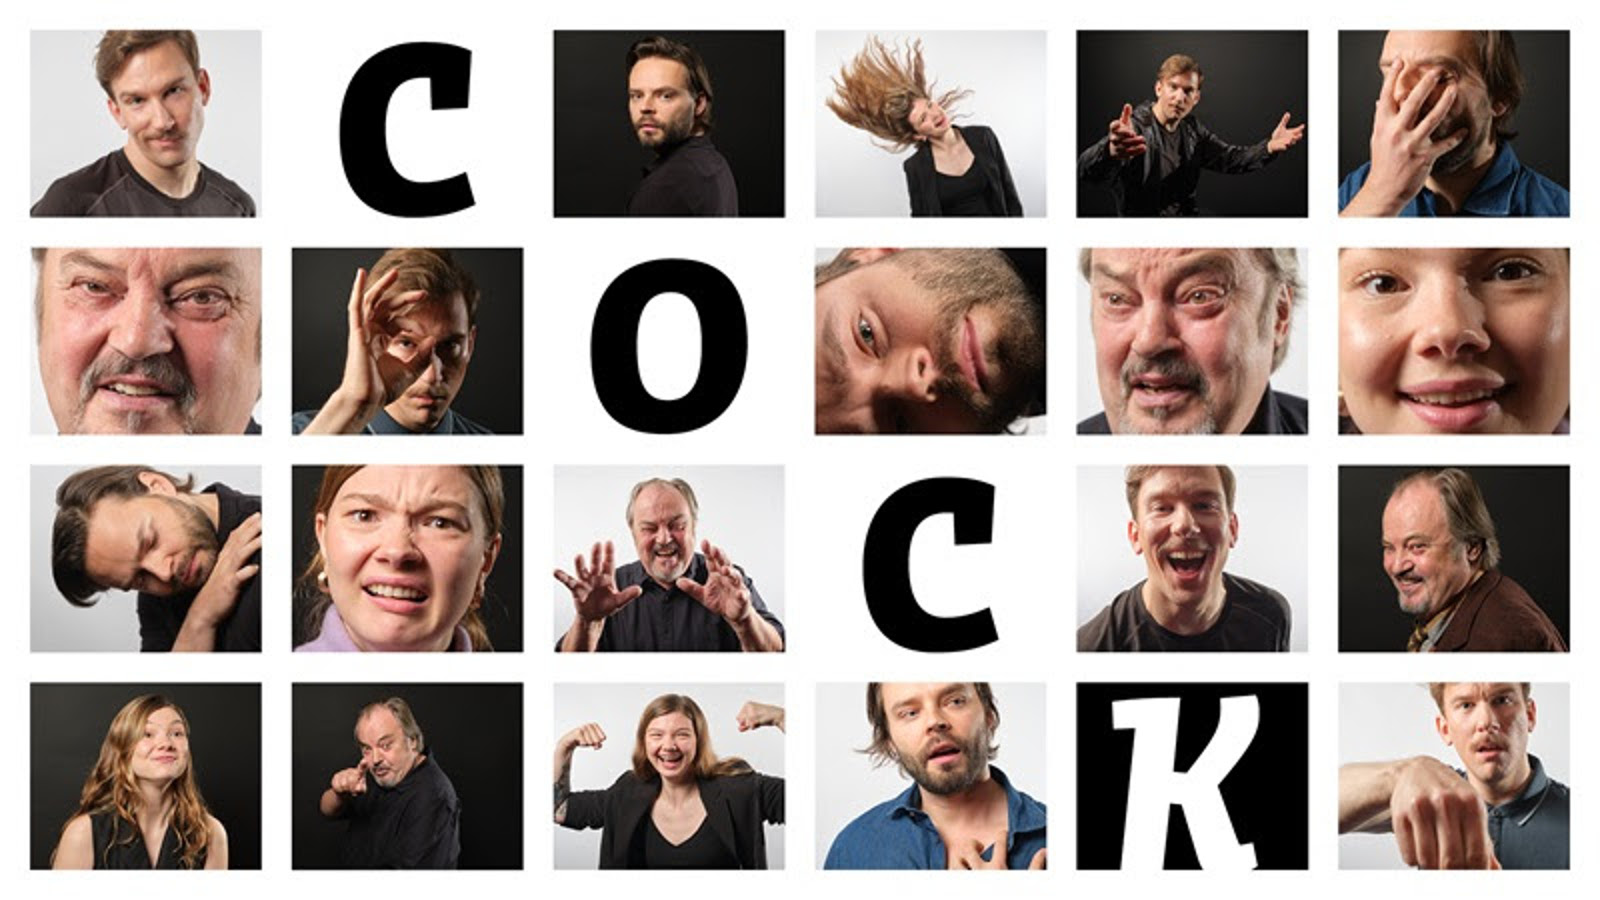 Kuvassa on neliömäisiä valokuvia näyttelijöiden kasvoista eri ilmeillä.  Niitä on vaakana kuusi ja pituussuunnassa neljä. Vinottain on näytelmän nimi Cock kirjain kerrallaan kuvien seassa.